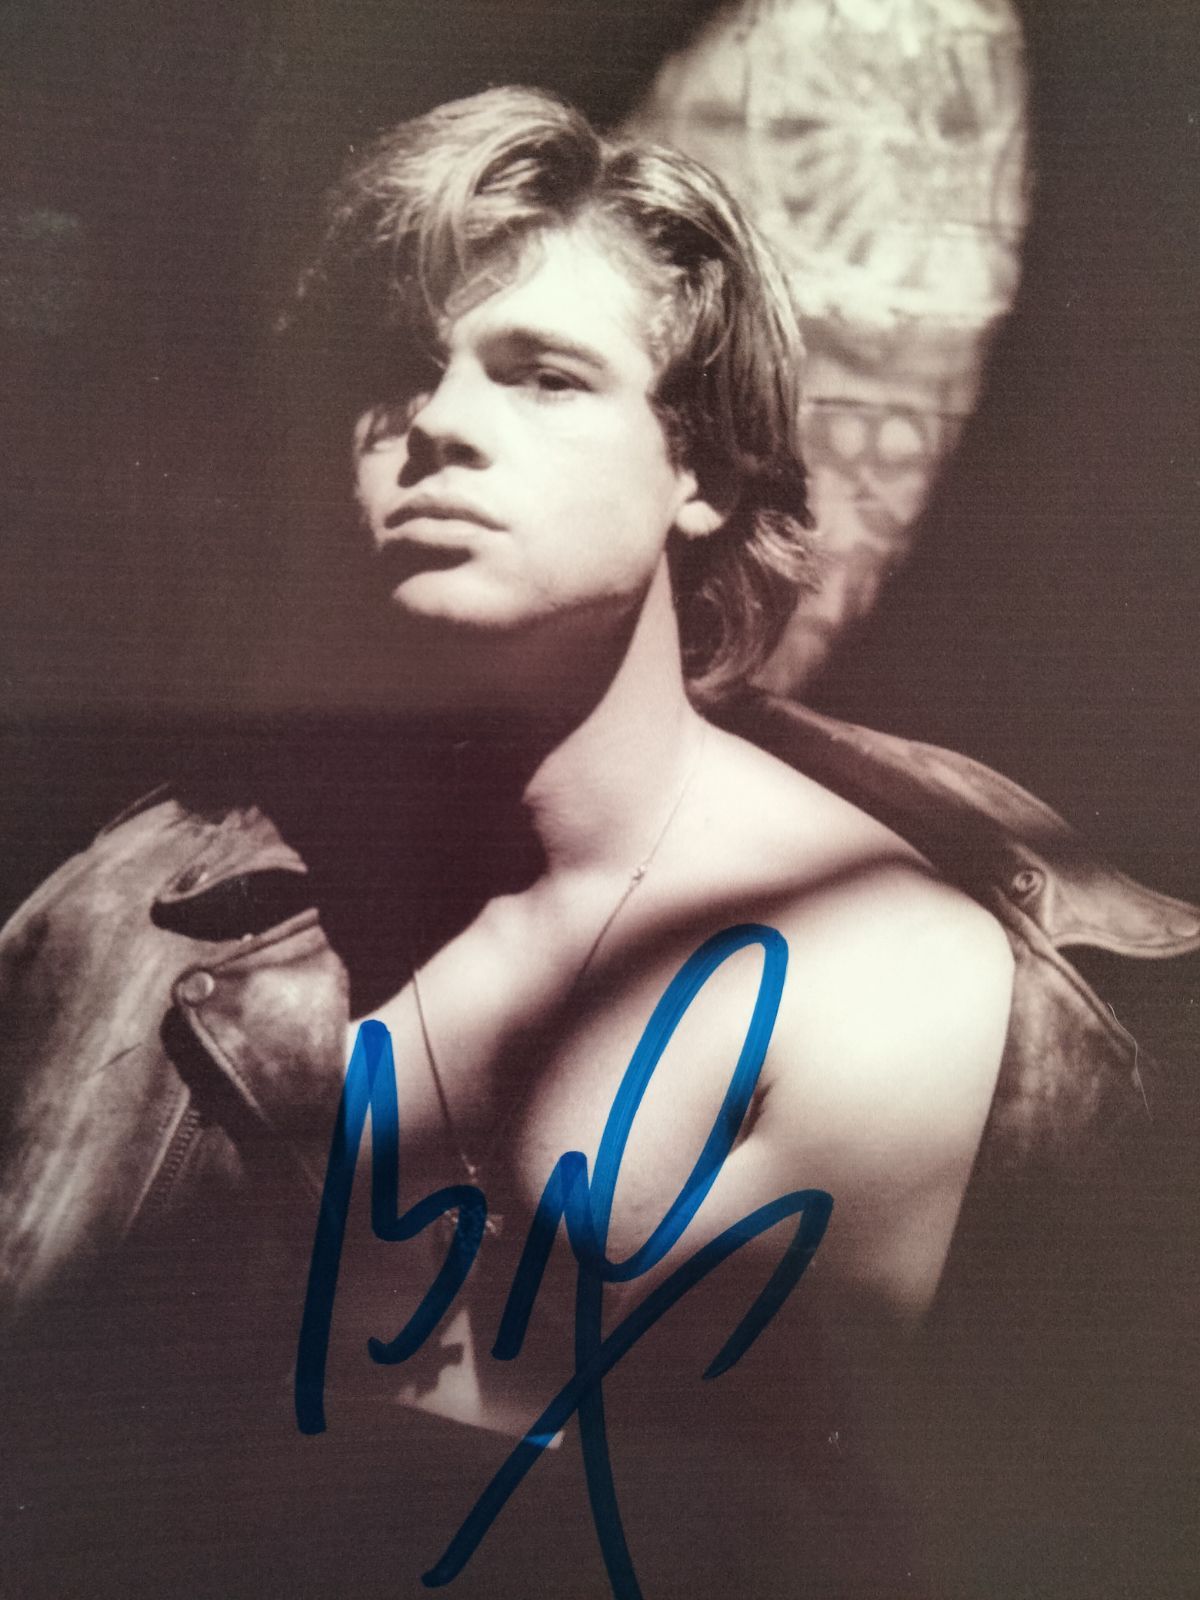 安心価格 ブラッドピット直筆サイン入り2Lサイズ写真…Brad Pitt… | www ...